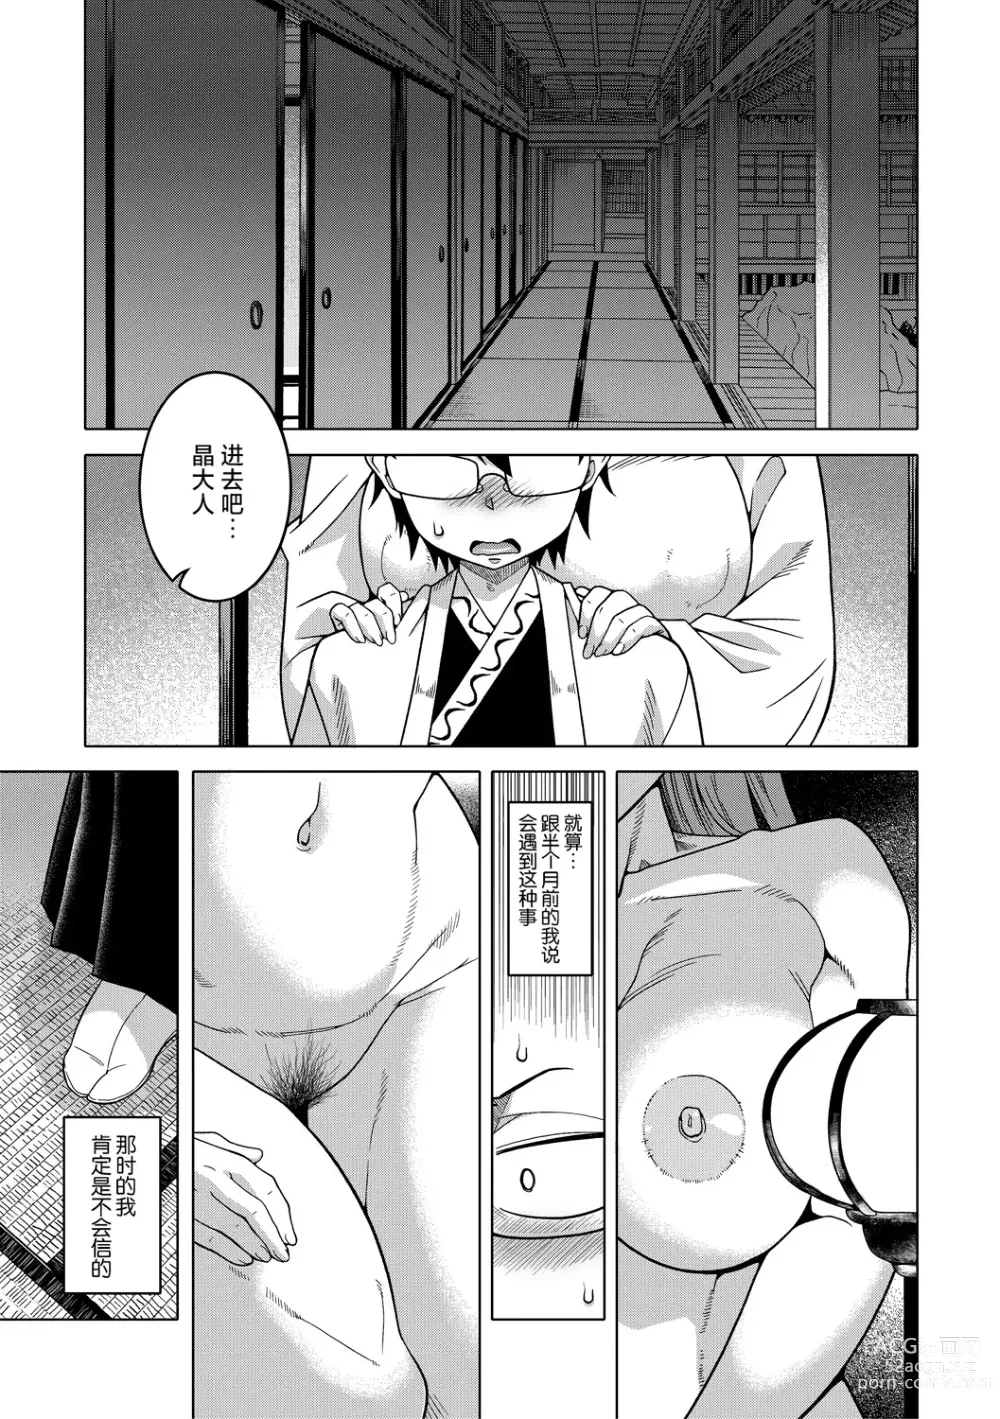 Page 3 of manga Kami-sama no Tsukurikata